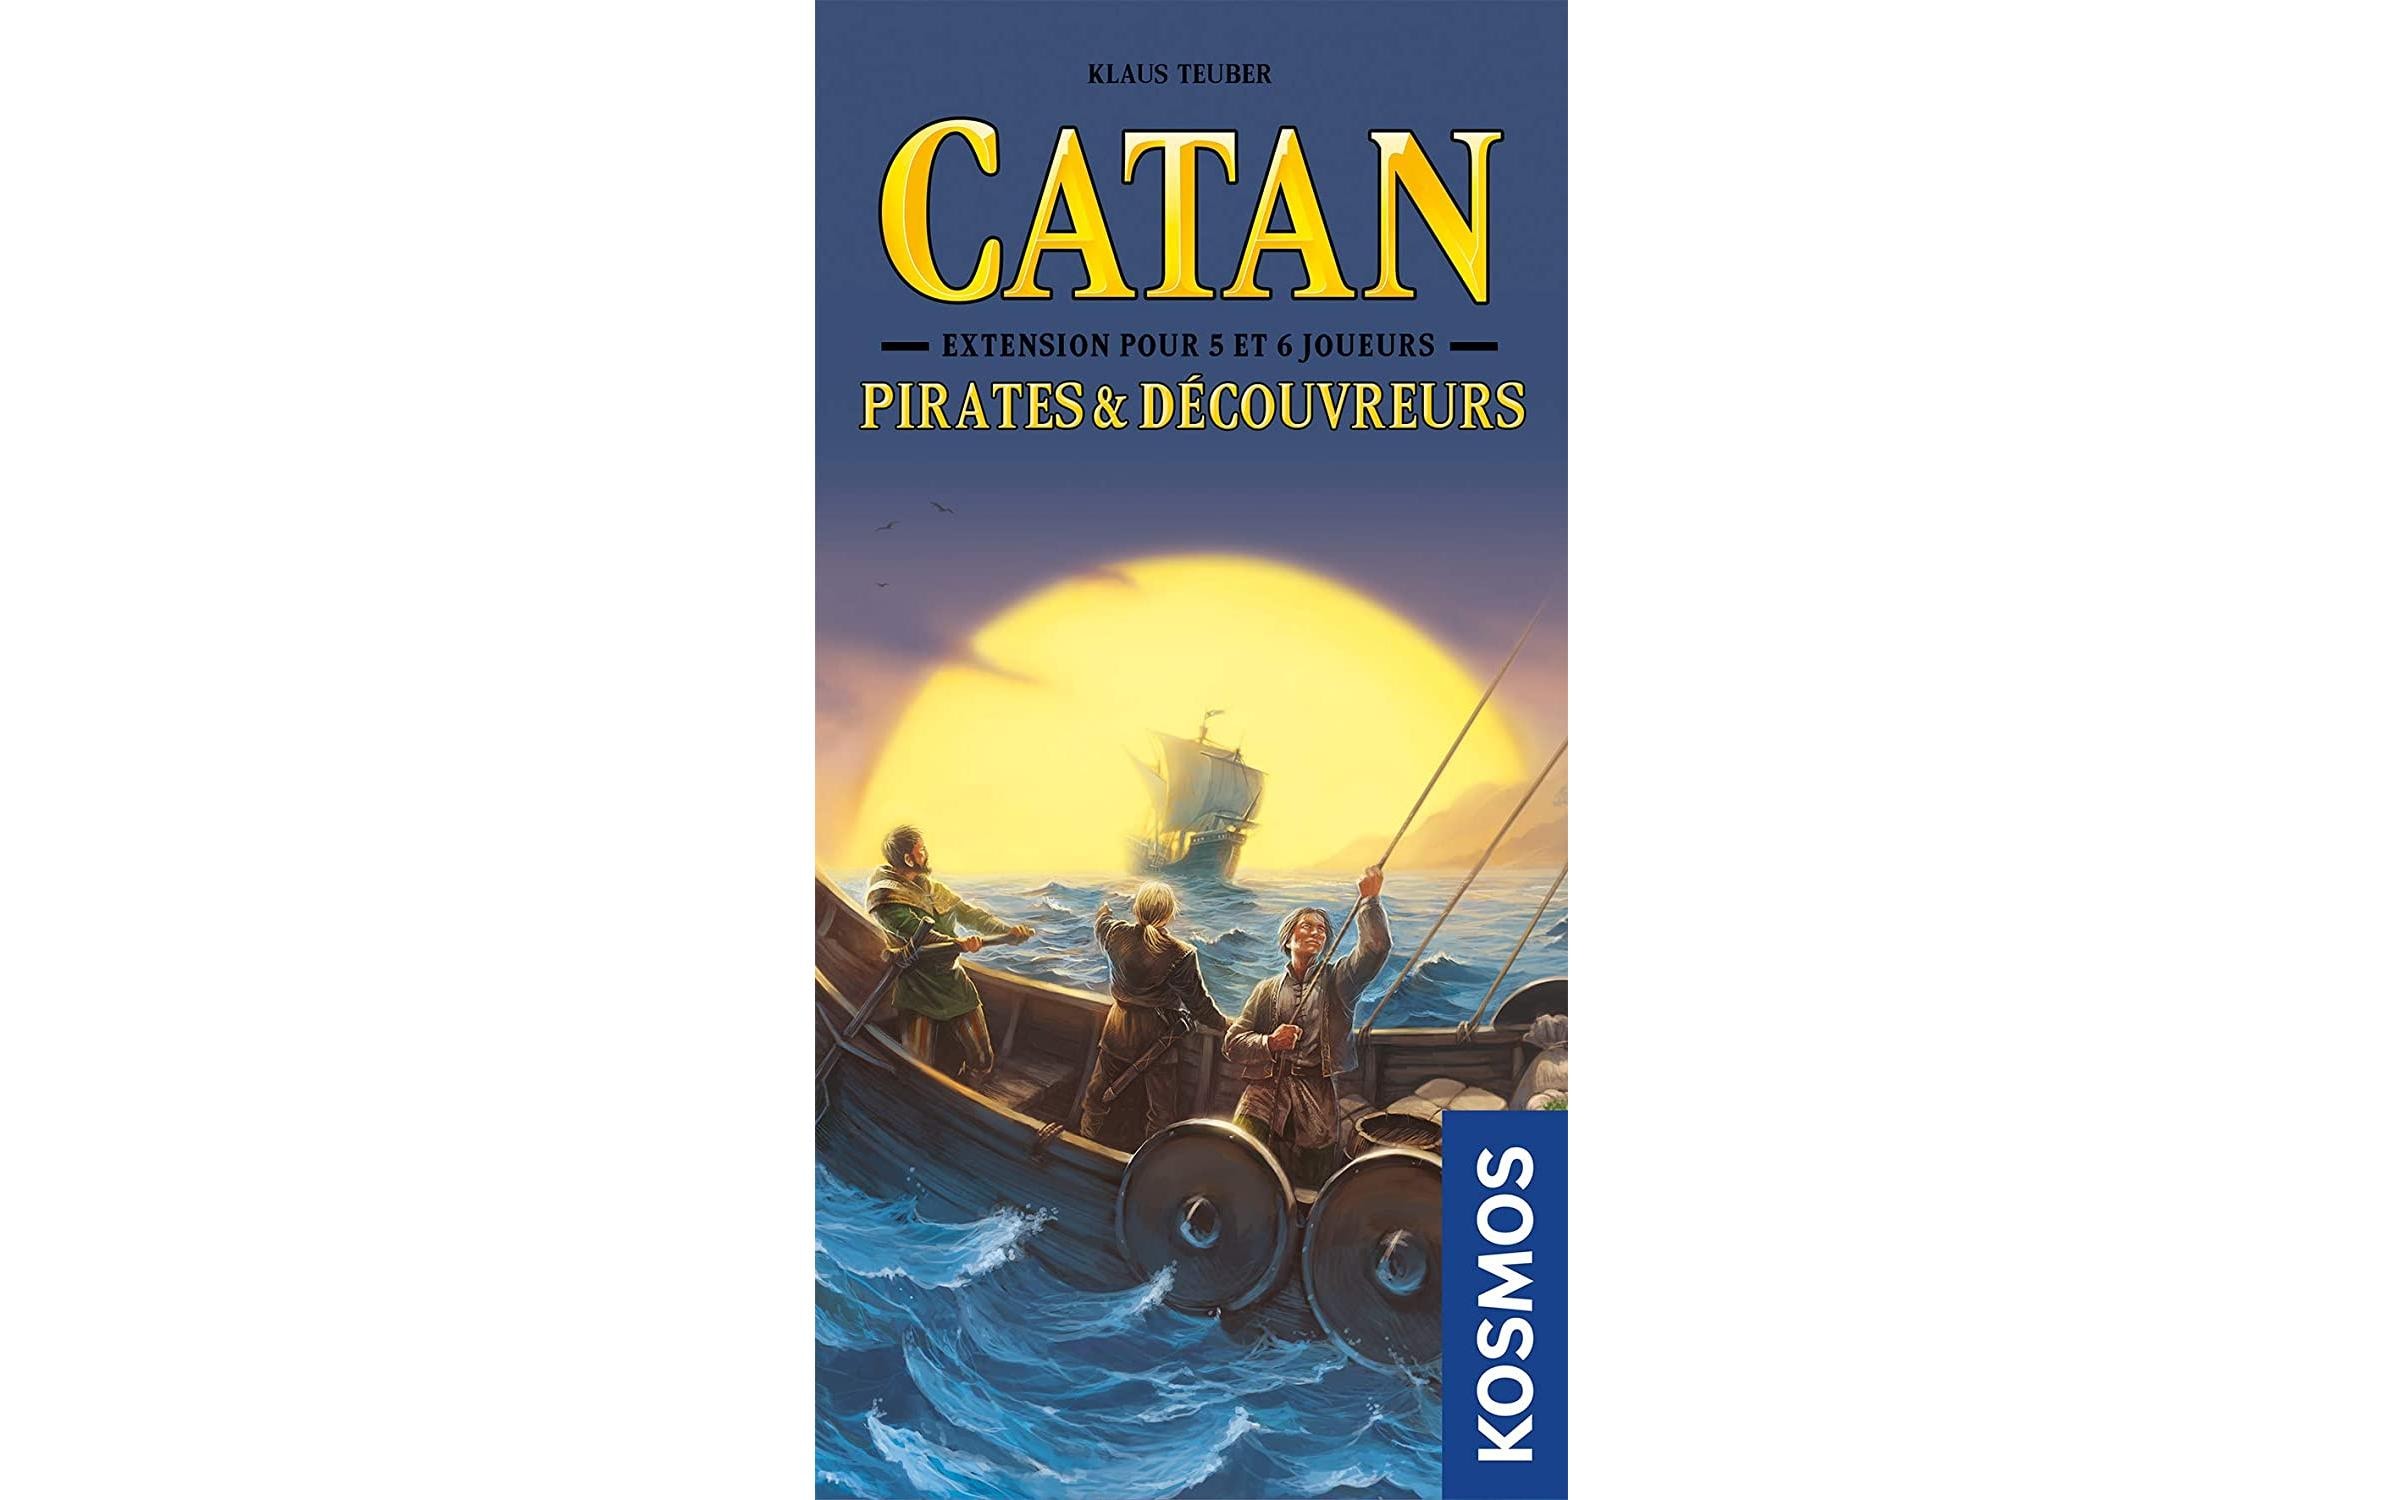 Kosmos Spiel »CATAN Pirates«